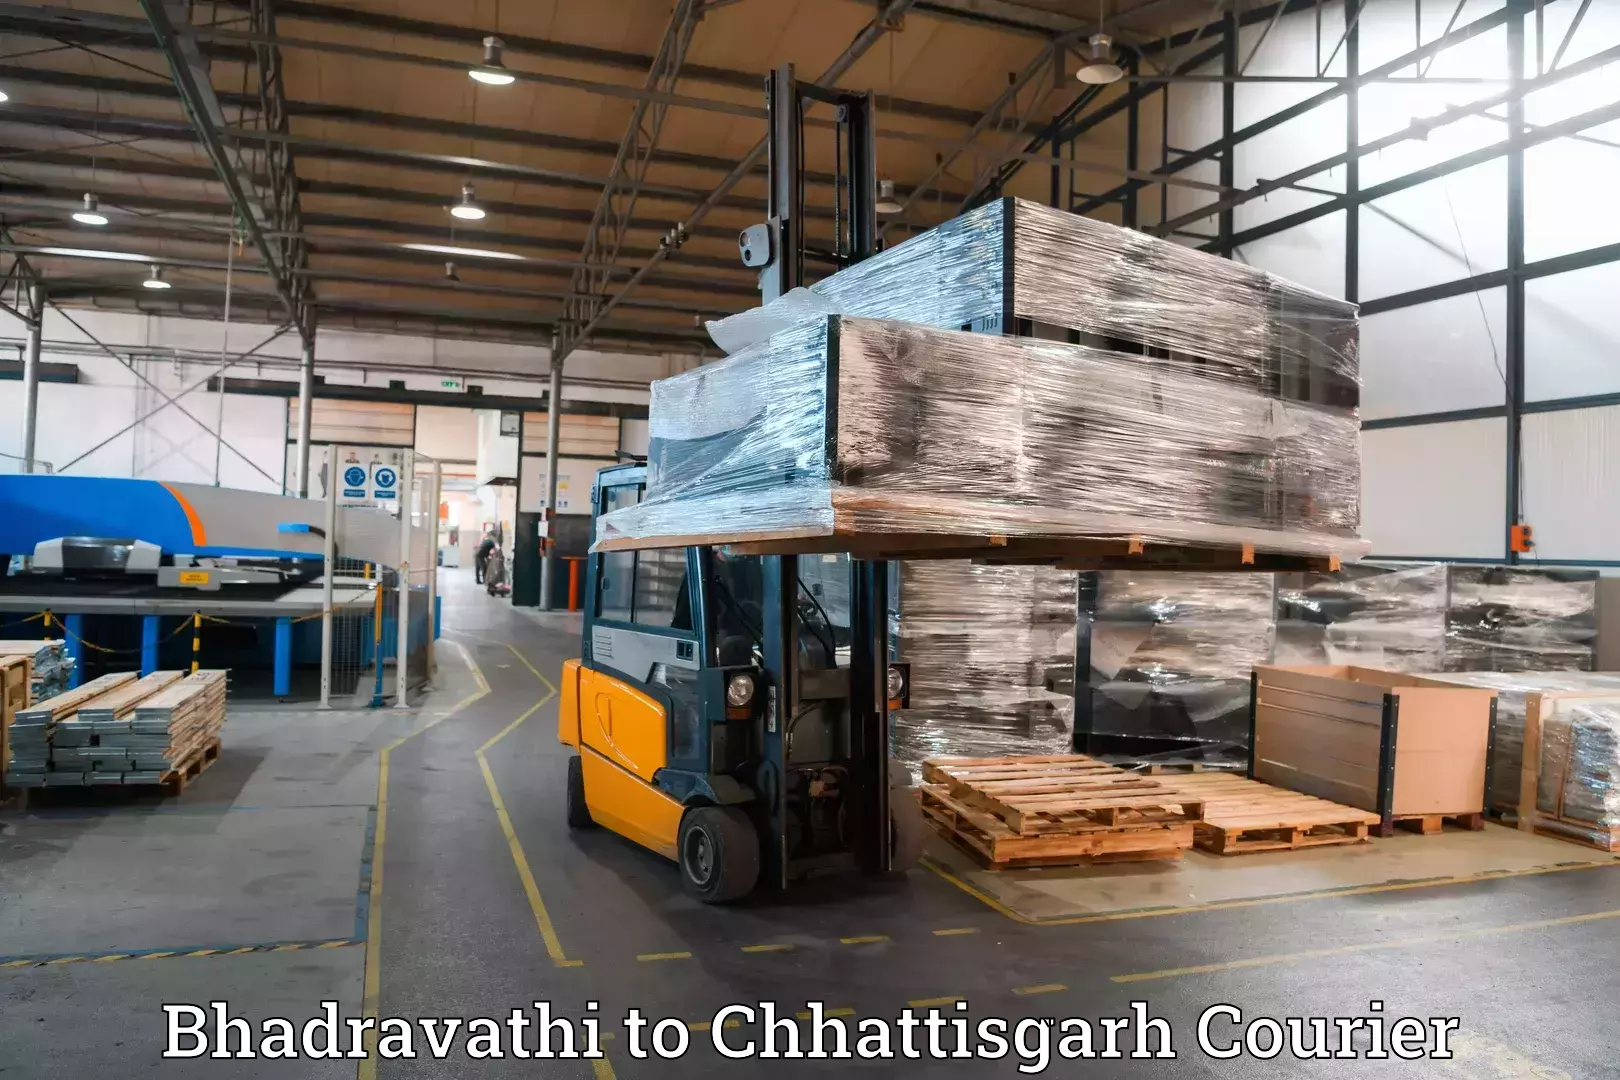 Baggage transport innovation Bhadravathi to Raipur